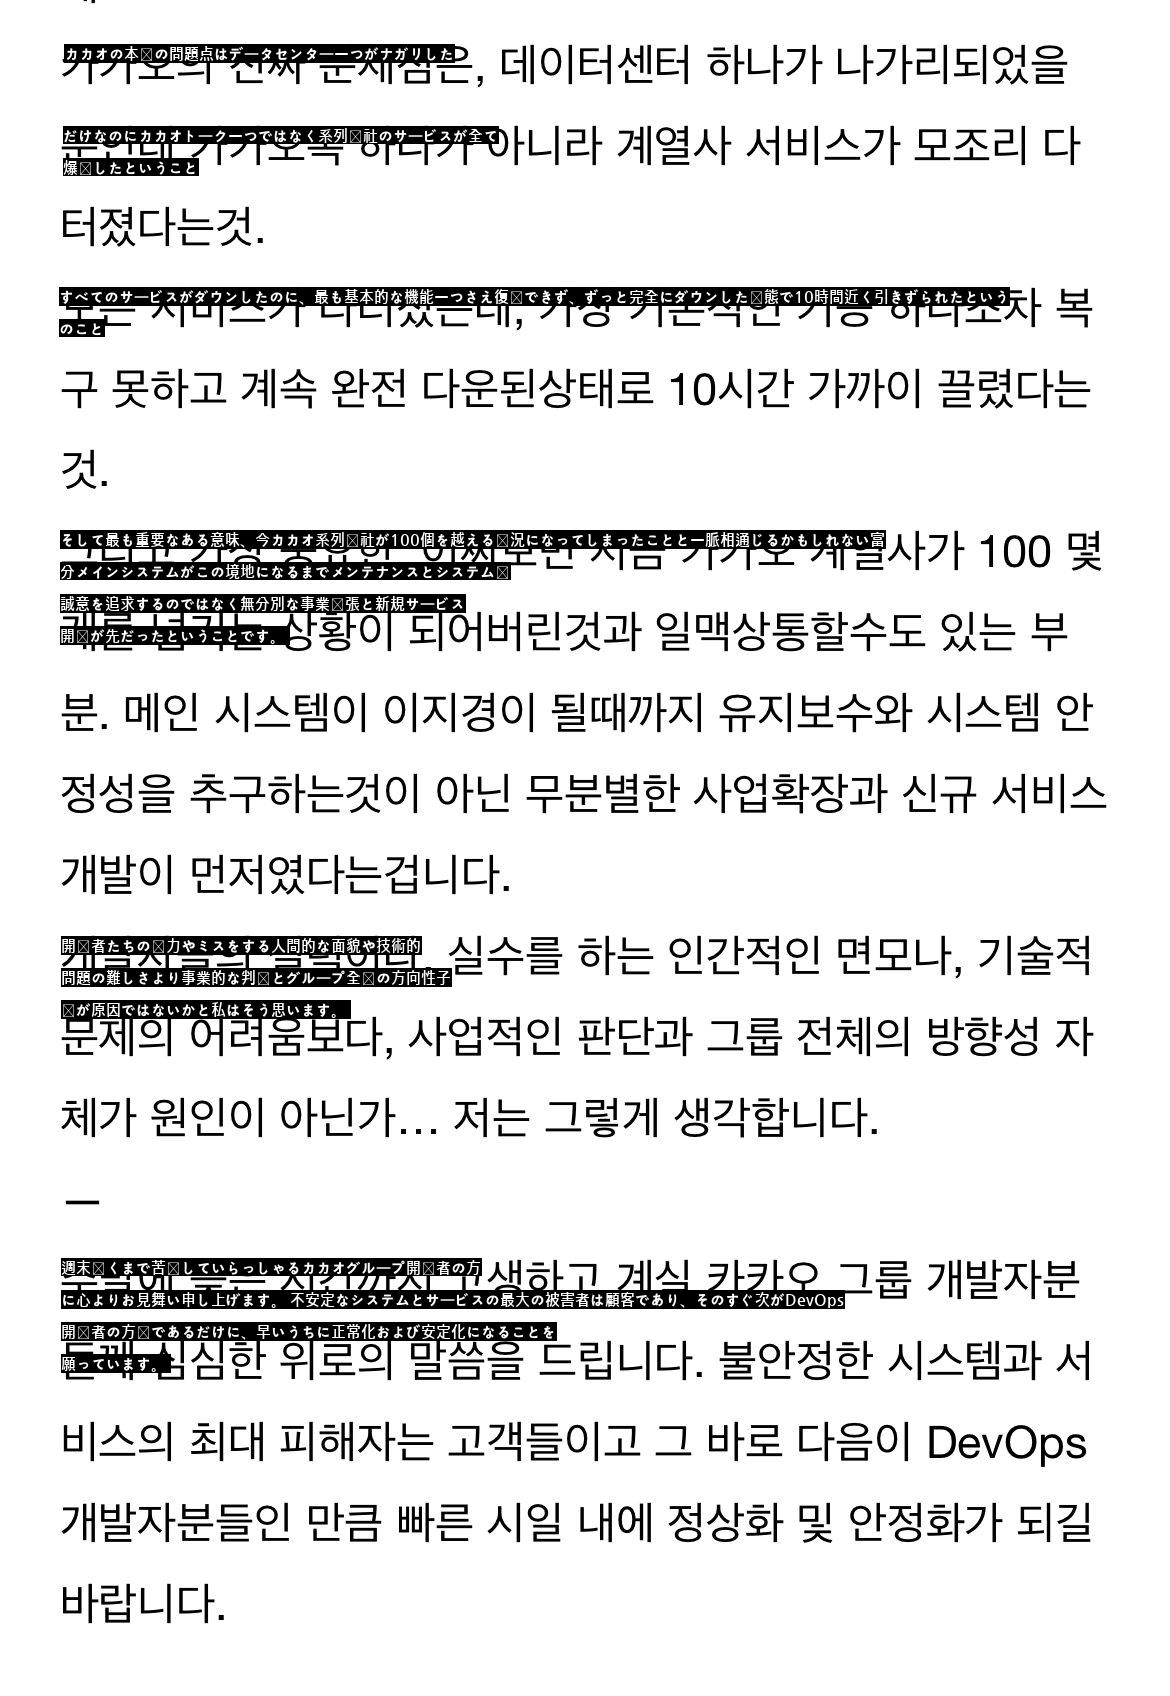 韓国オラクル職員の今回の事態に対する一針